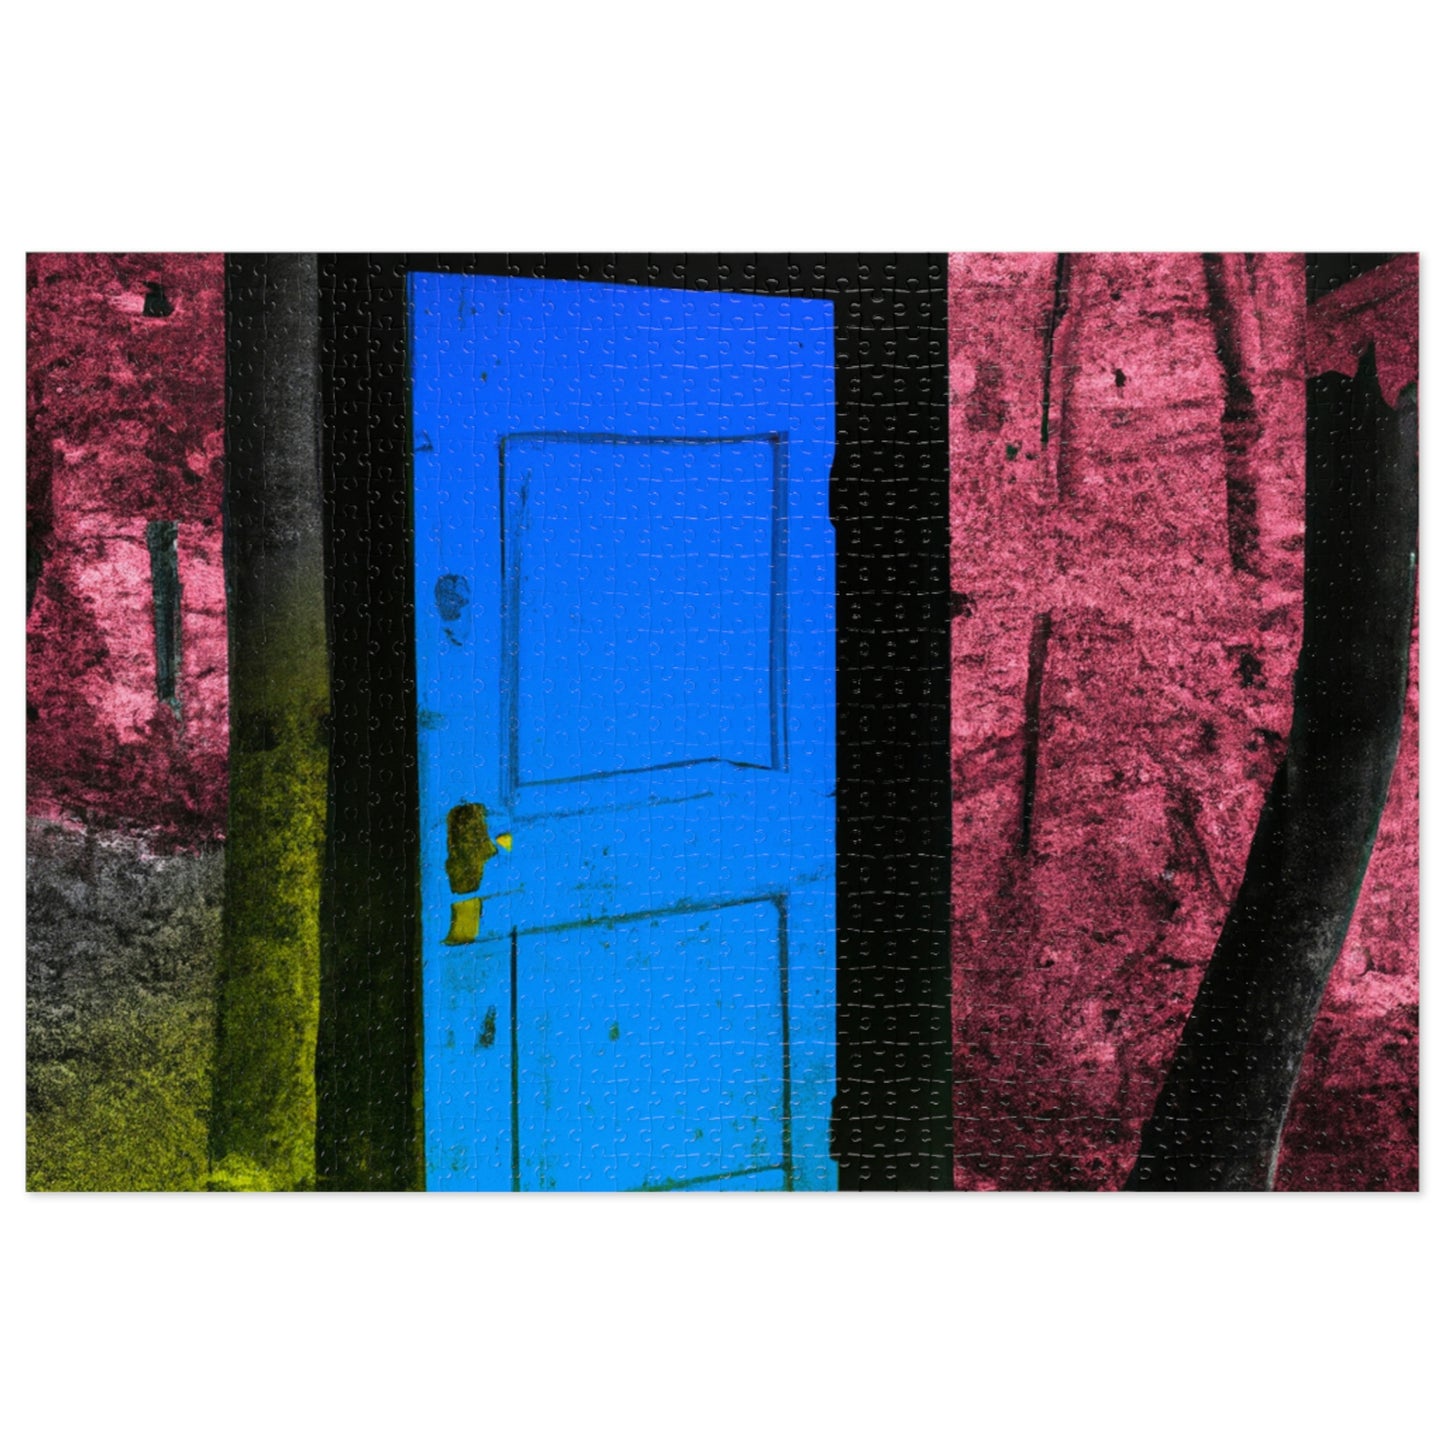 Die rätselhafte Tür des Waldes - Das Alien-Puzzle